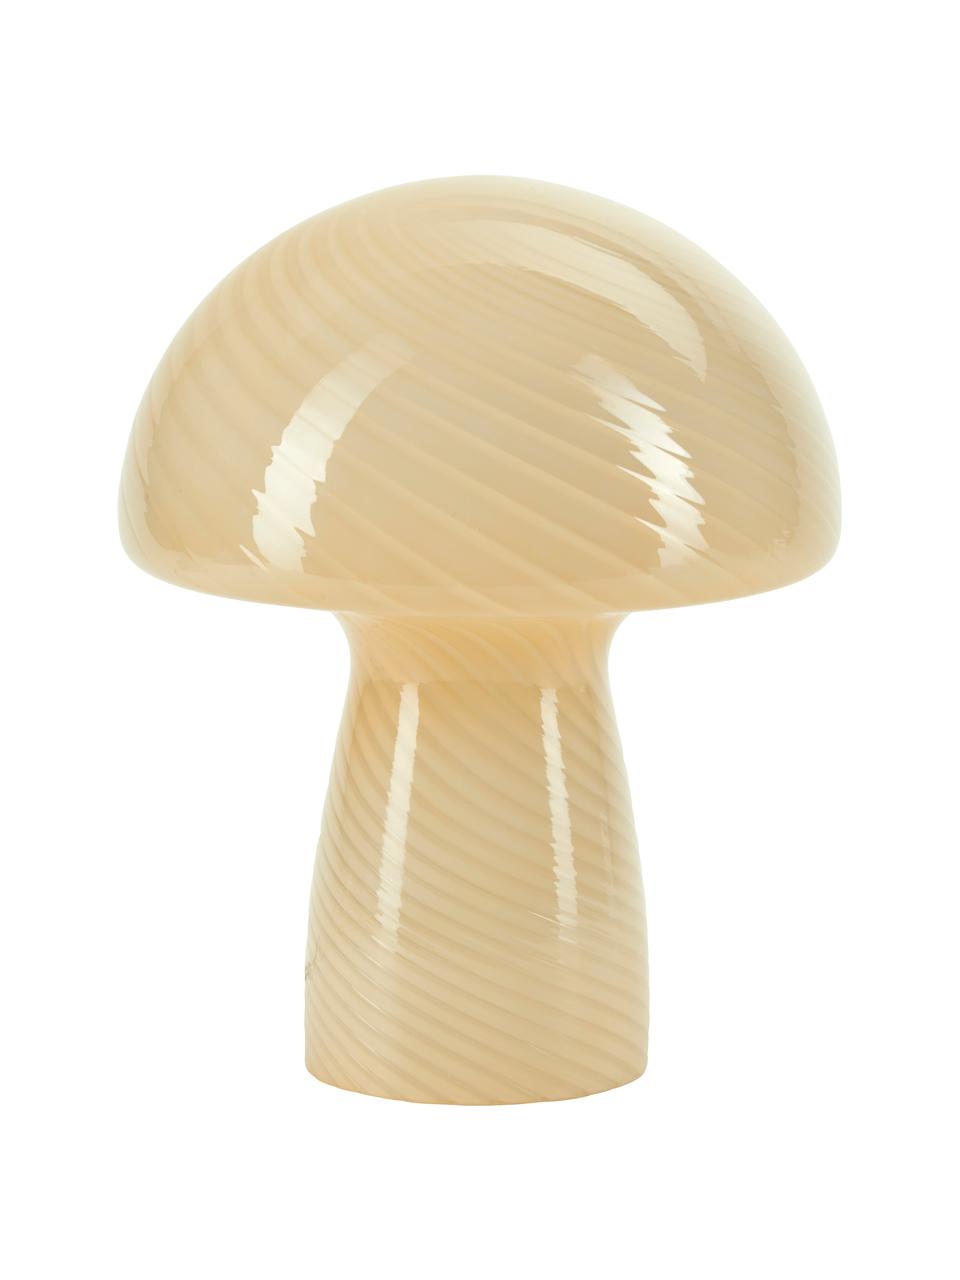 Kleine Tischlampe Mushroom aus Glas in Gelb, Gelb, Ø 19 x H 23 cm